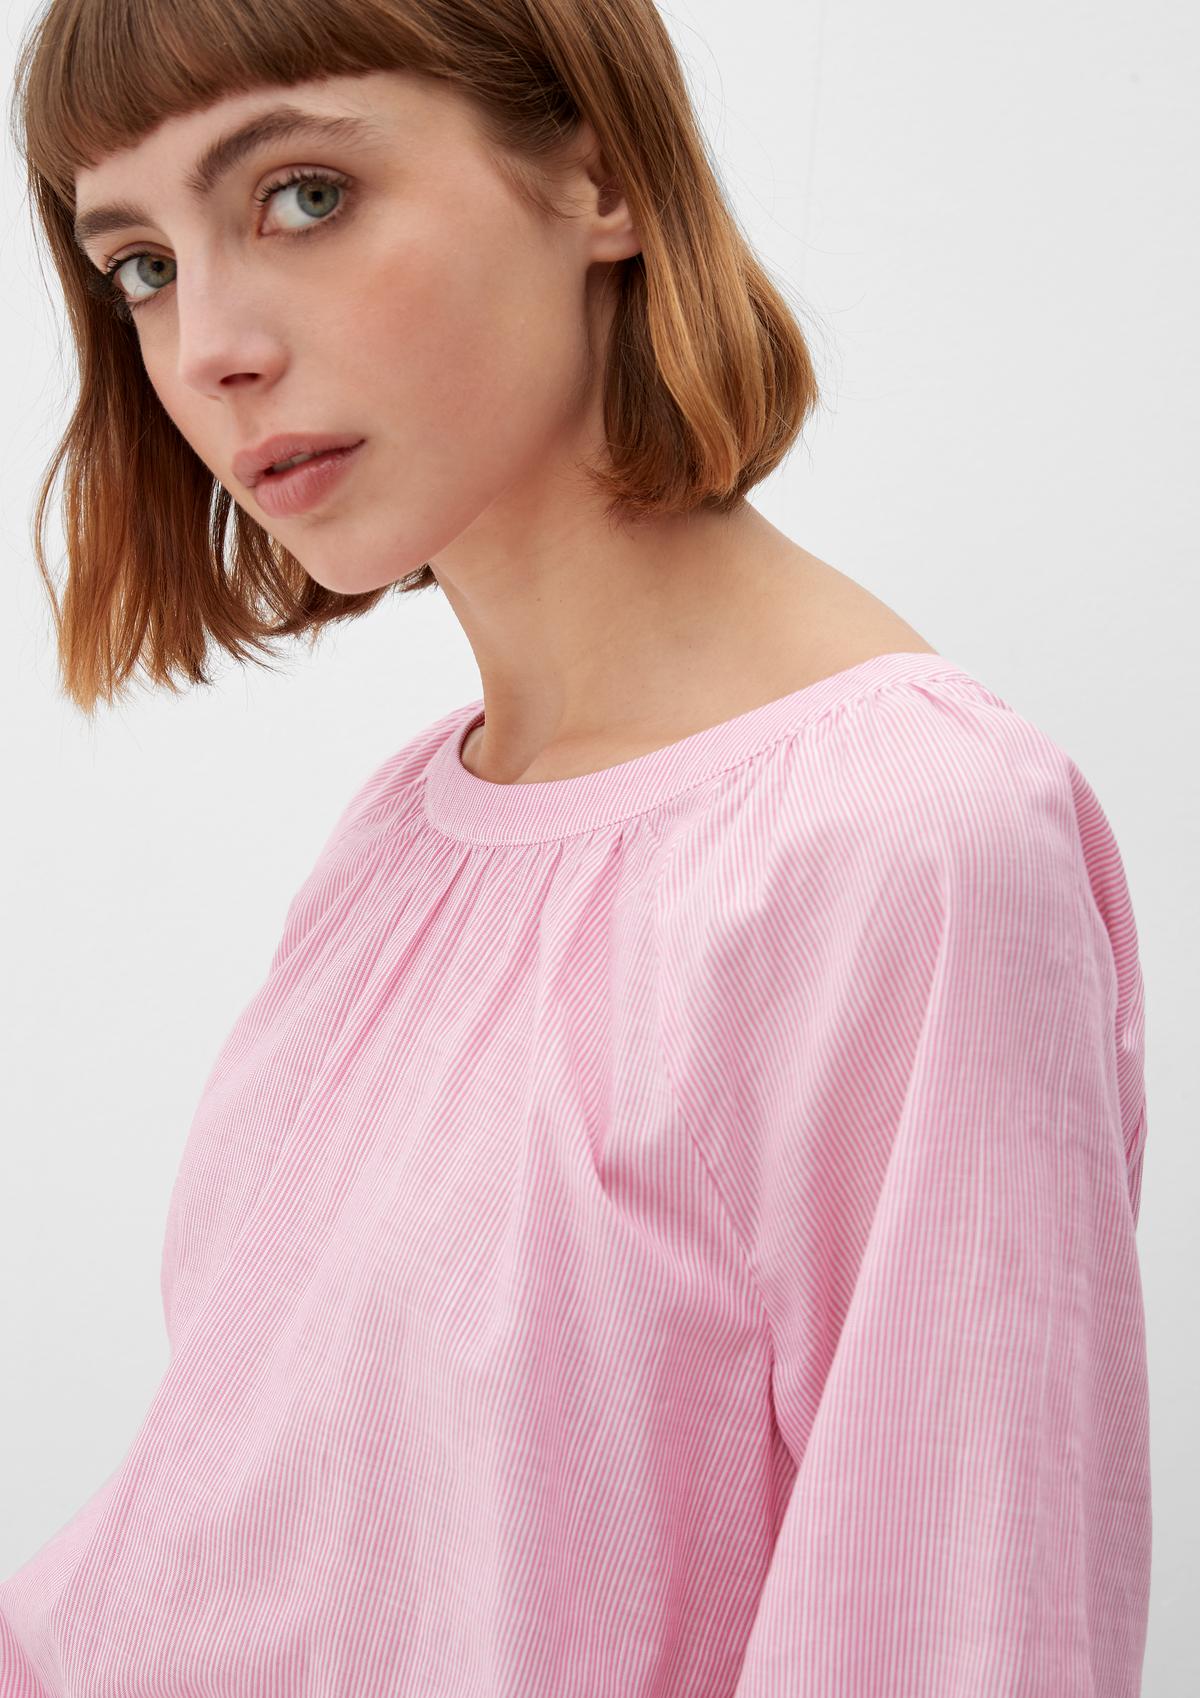 s. Olive r Camiseta rosa 